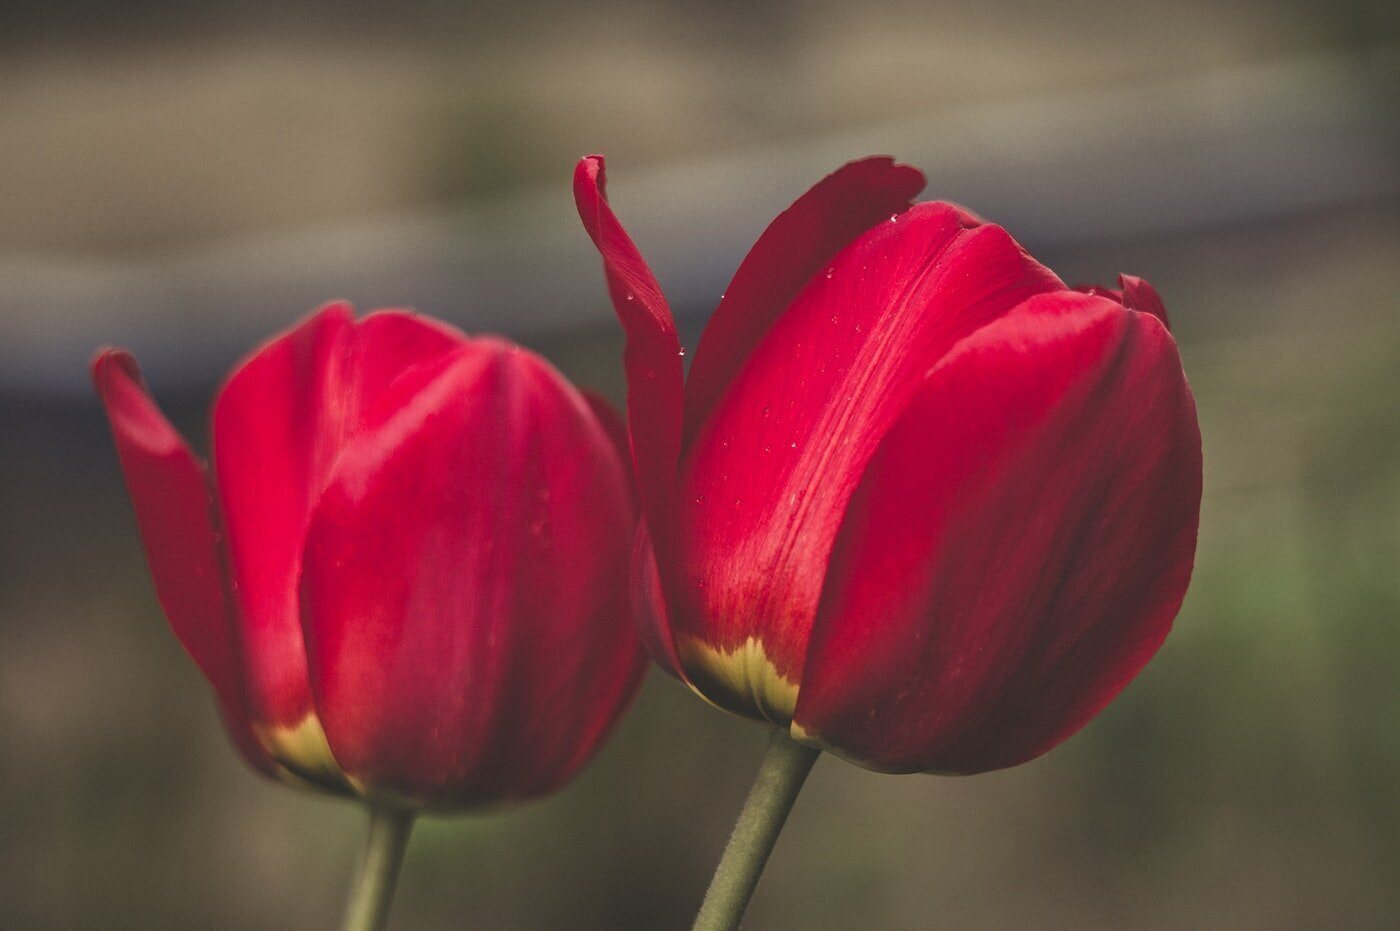 fechamento de duas tulipas vermelhas - significado e simbolismo das tulipas